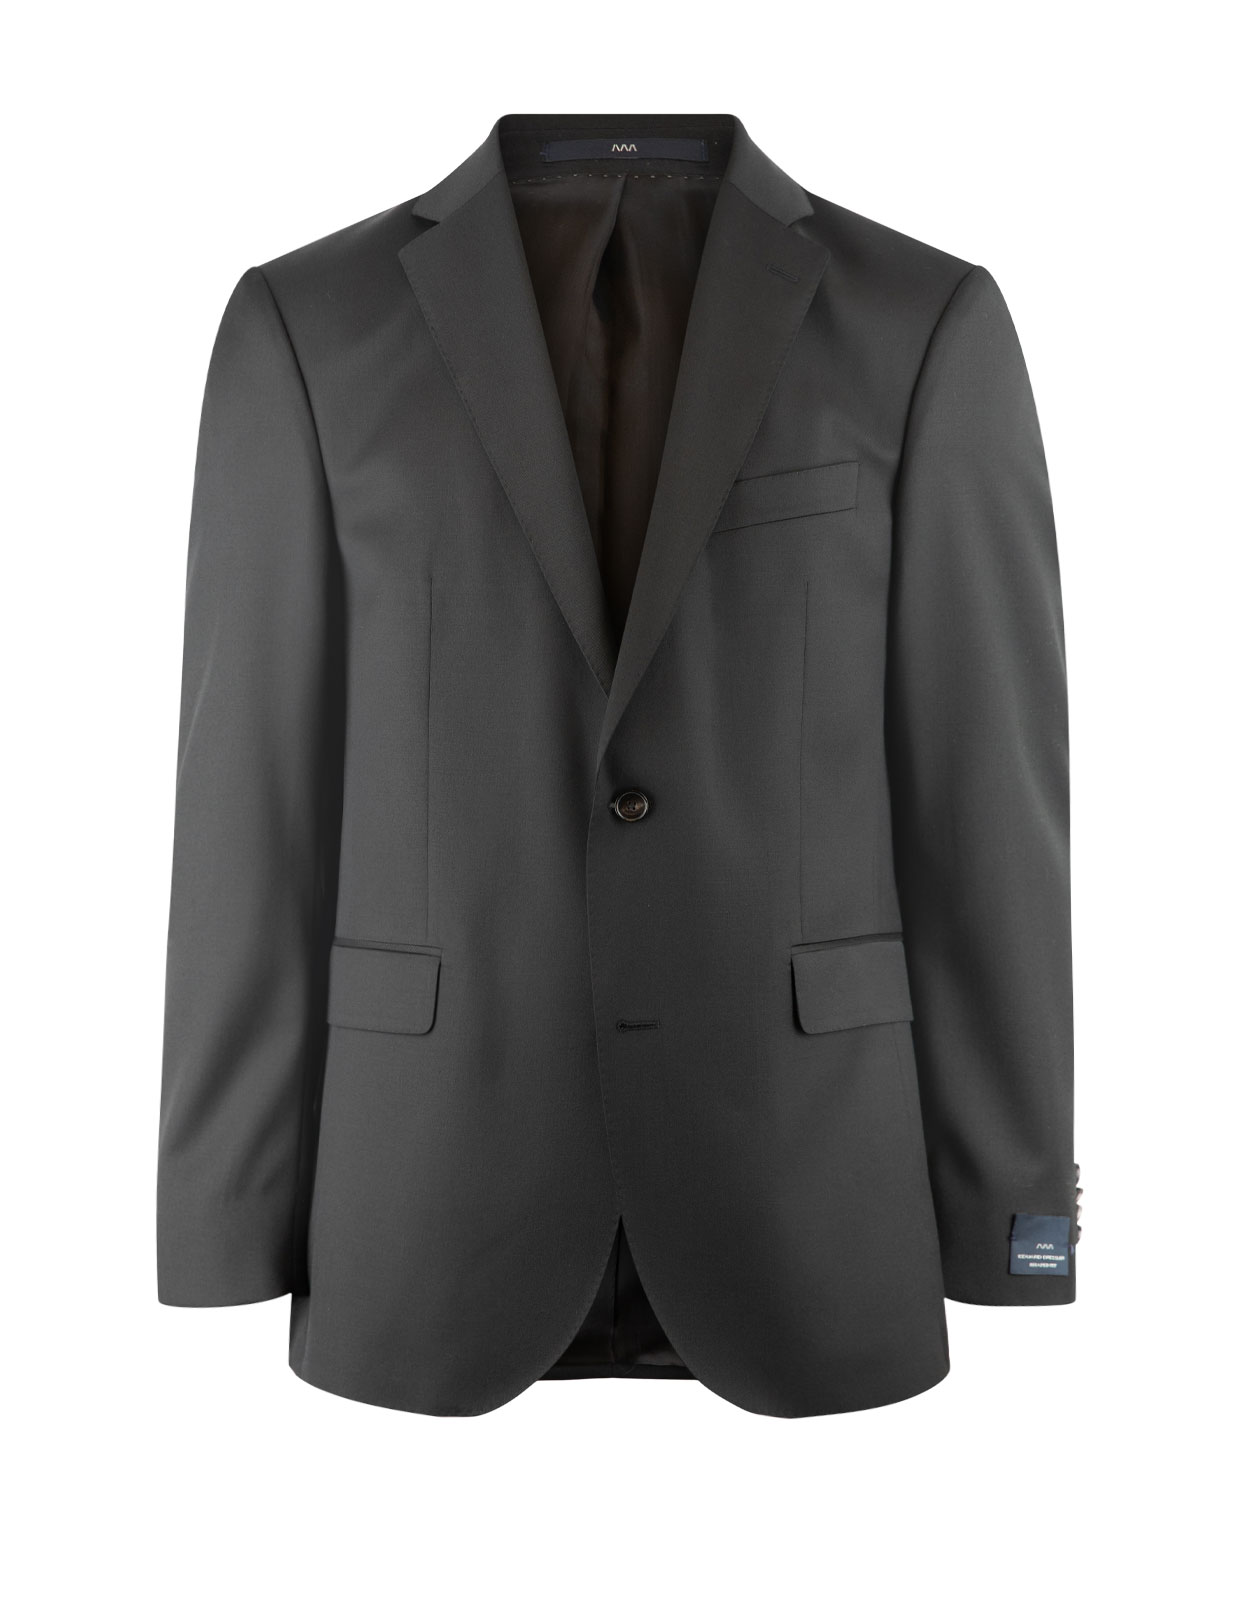 Edson Suit Jacket 110's Wool Mix & Match Black Stl 116